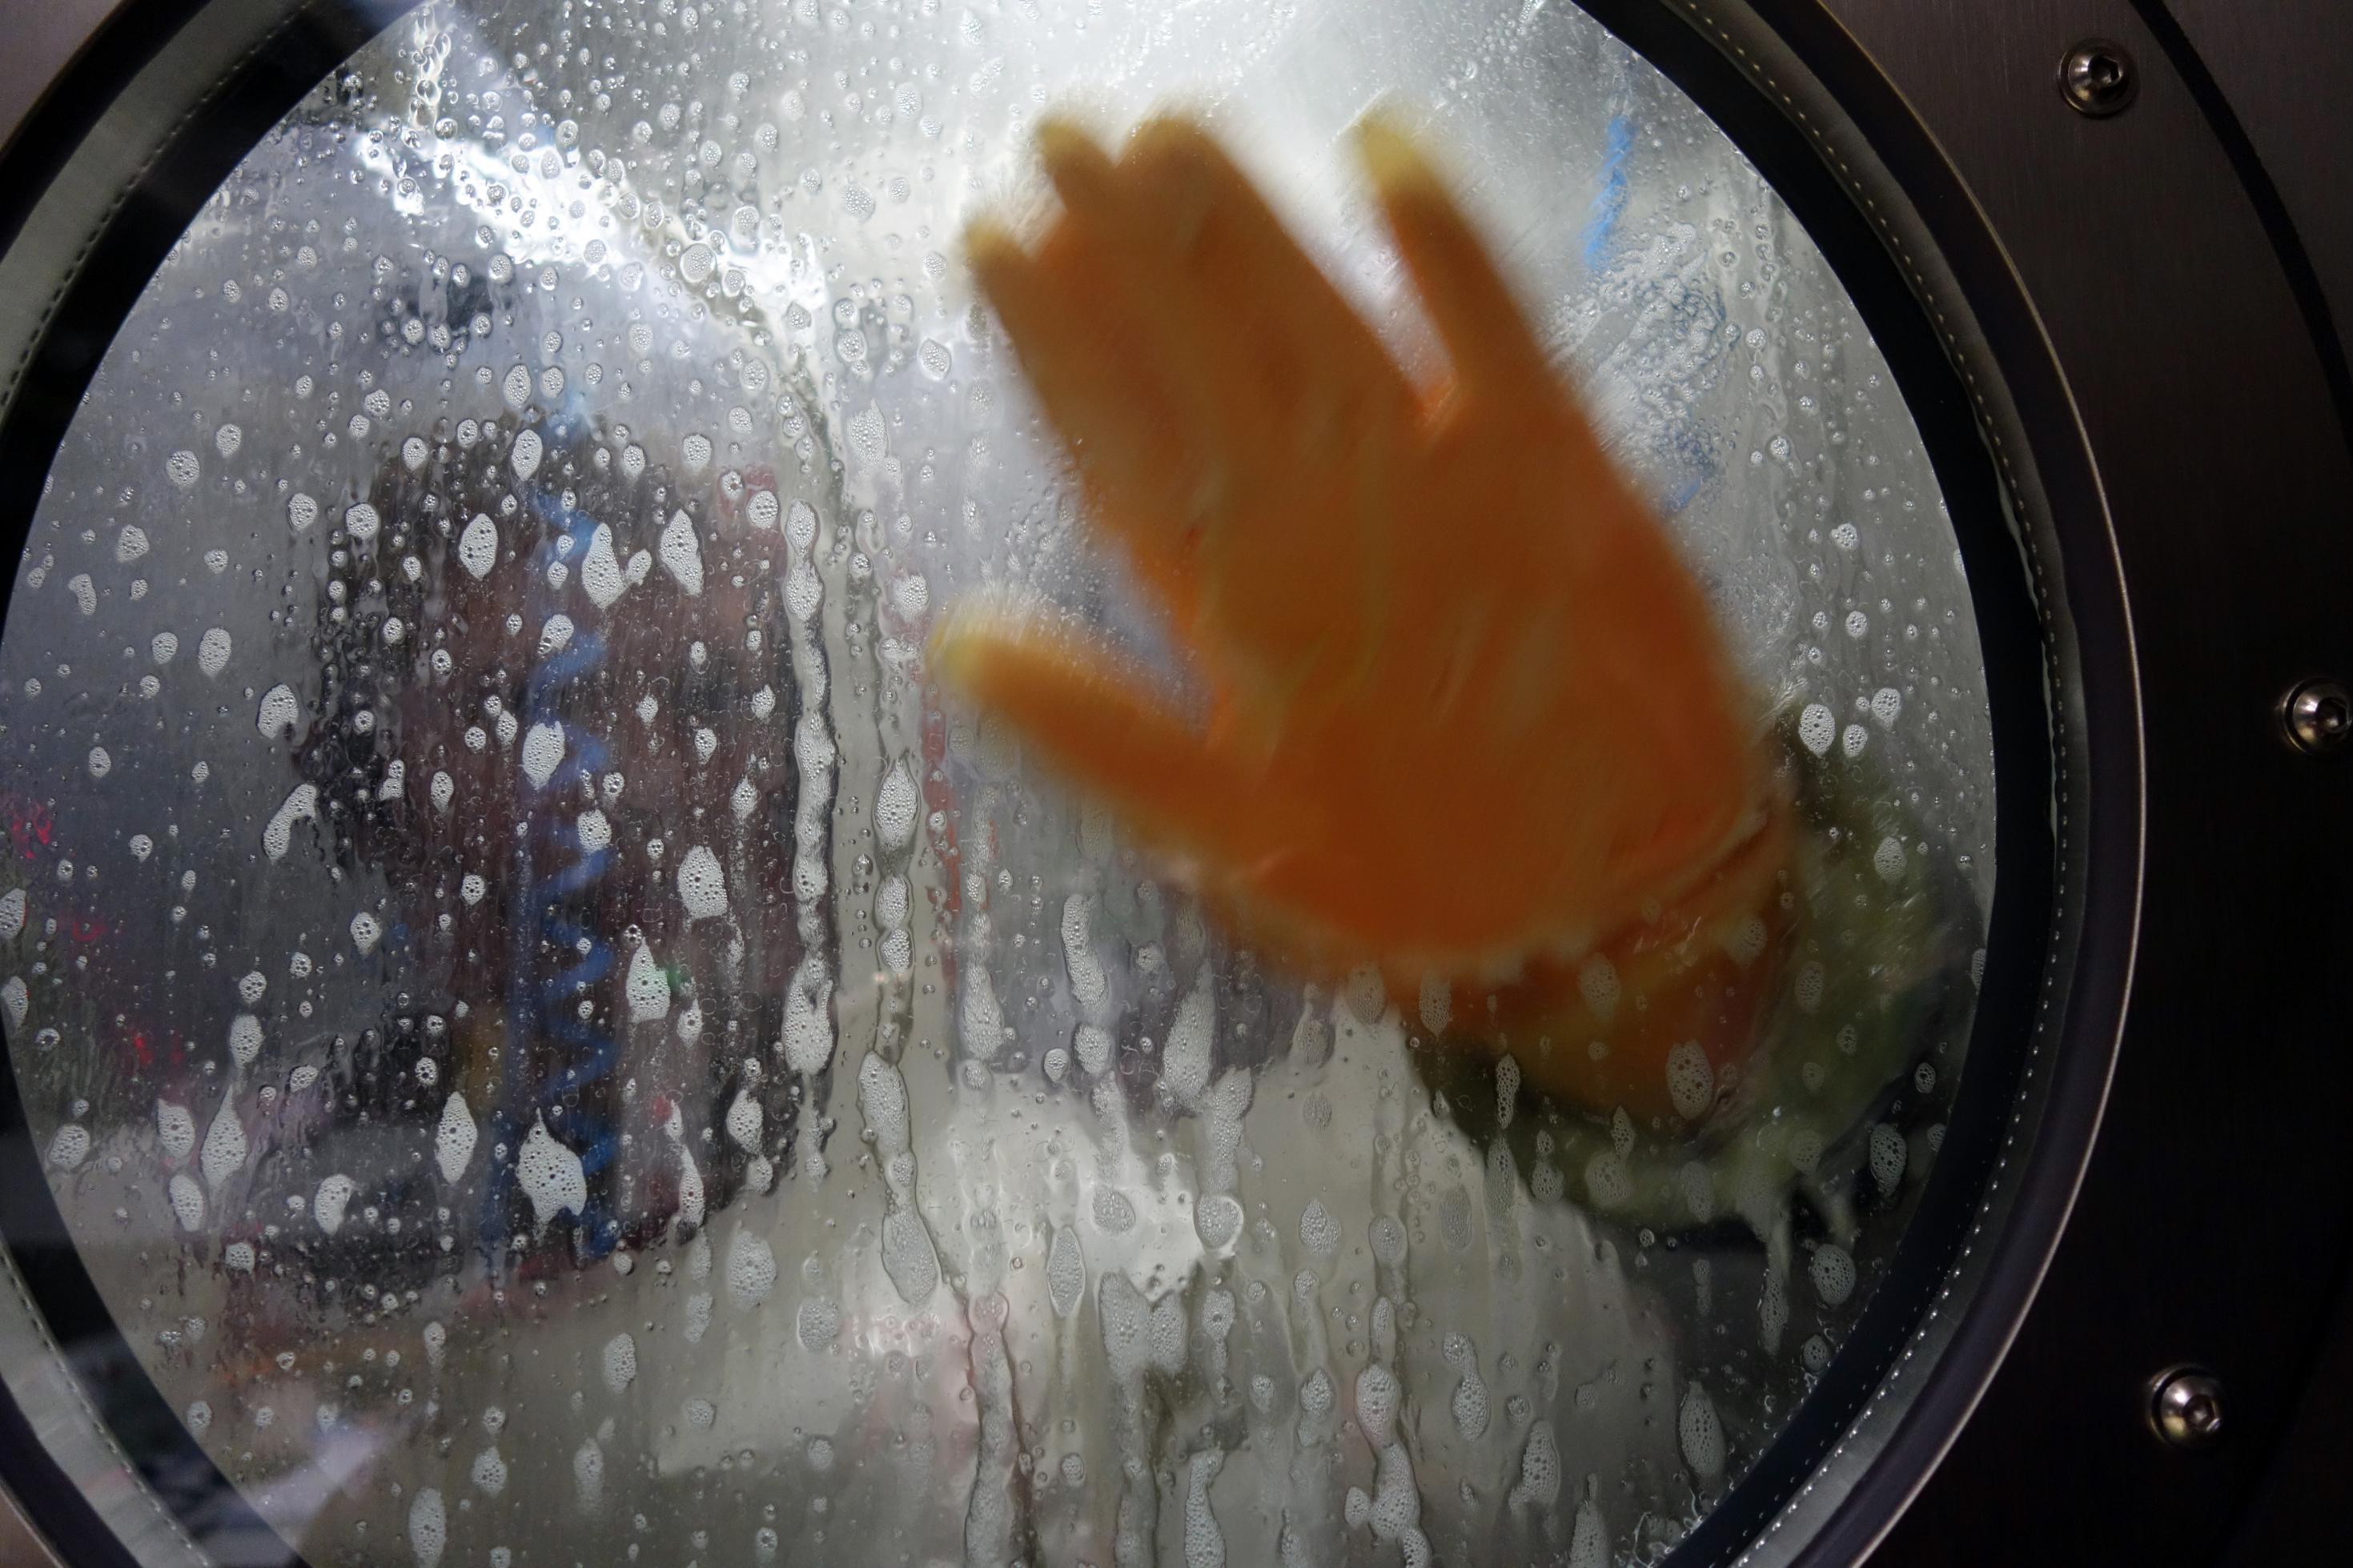 Blick durch ein rundes Fenster in die Dekontaminationsdusche des Hochsicherheitslabors am Robert Koch-Institut. Durch den Spülschaum ist zu erkennen, dass eine Person darin gerade ihren Schutzanzug abspült, eine Handfläche hält sie mit dem Schutzhandschuh an das Fenster.